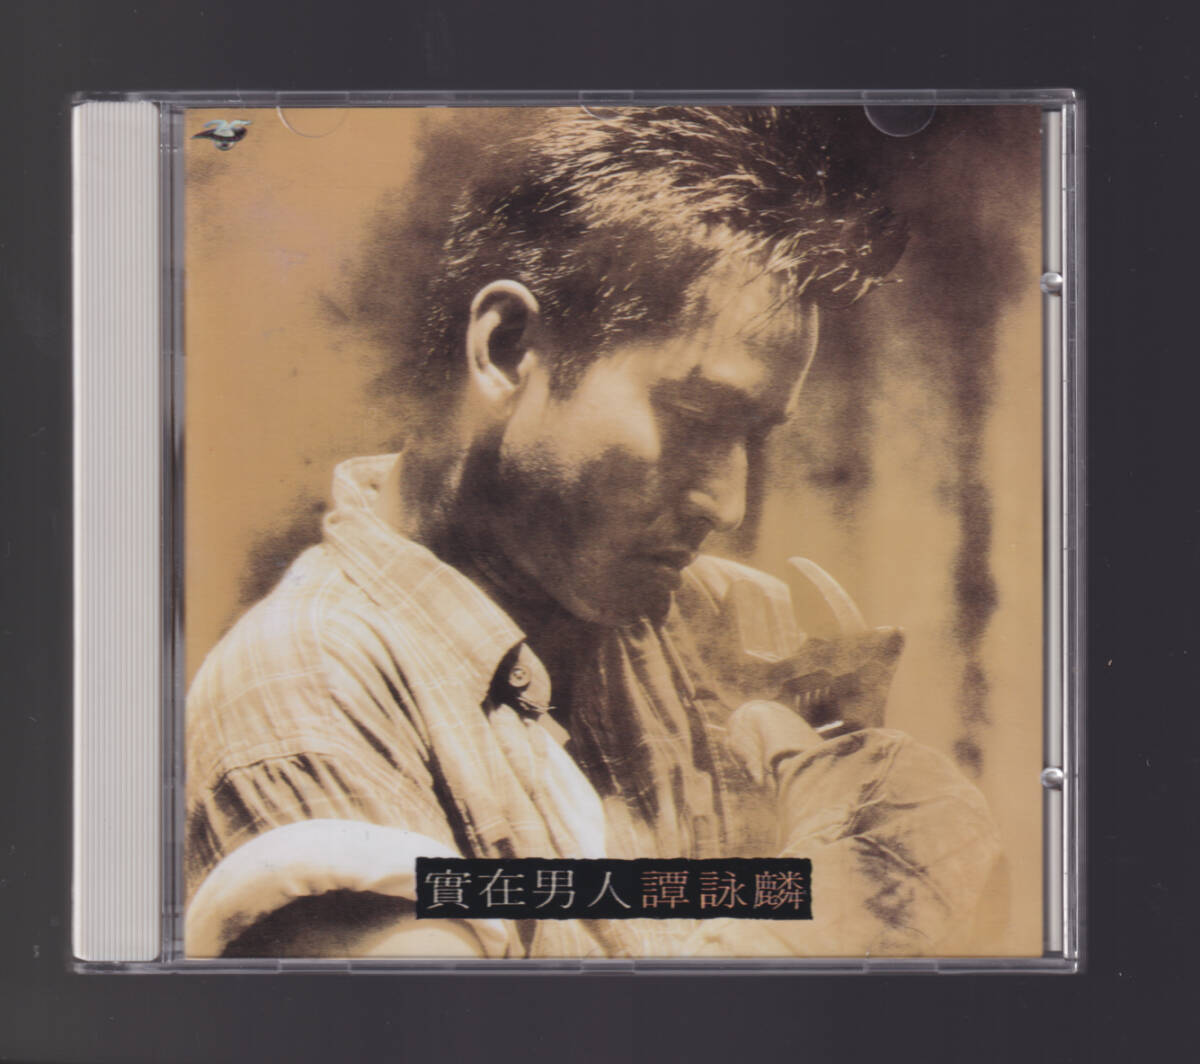 レア アラン・タム 「 譚詠麟 實在男人 」香港盤CD 95年盤 Philips Alan Tam 中華ポップスの画像1